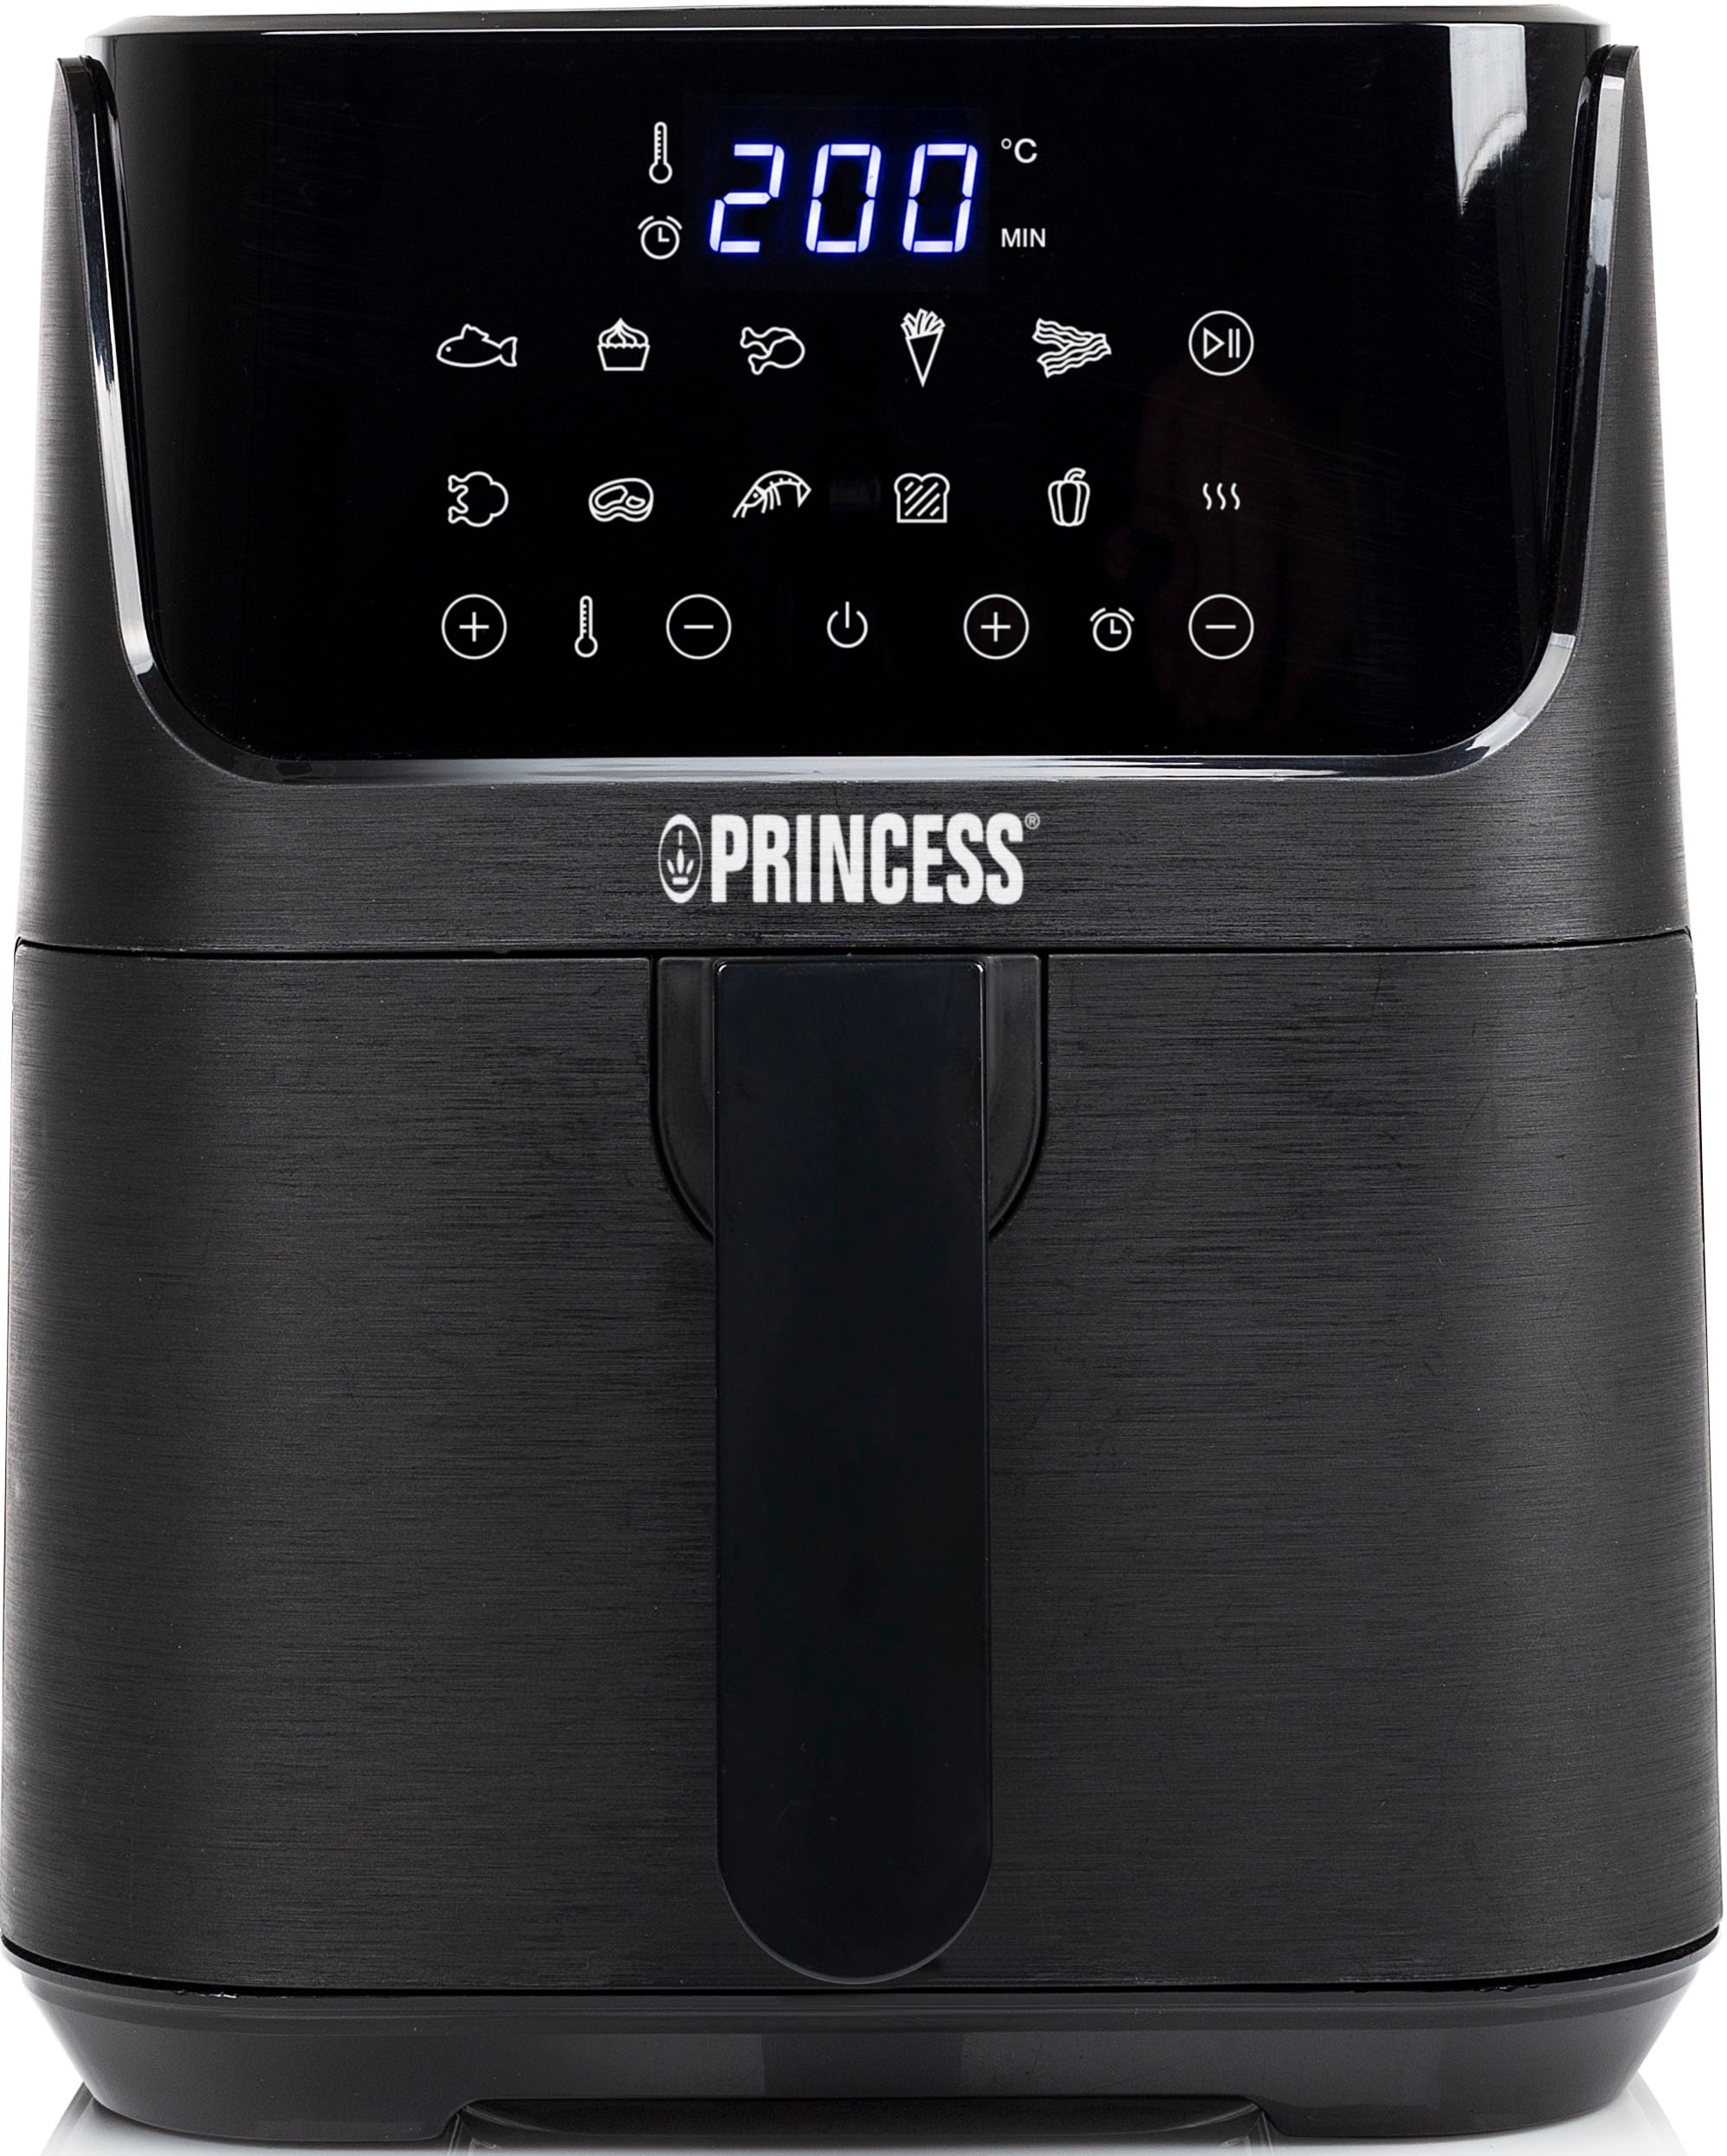 PRINCESS Heißluftfritteuse »182024«, 1350 W, Heißluftfritteuse XL - 3,5 L - Digitaler Touchscreen